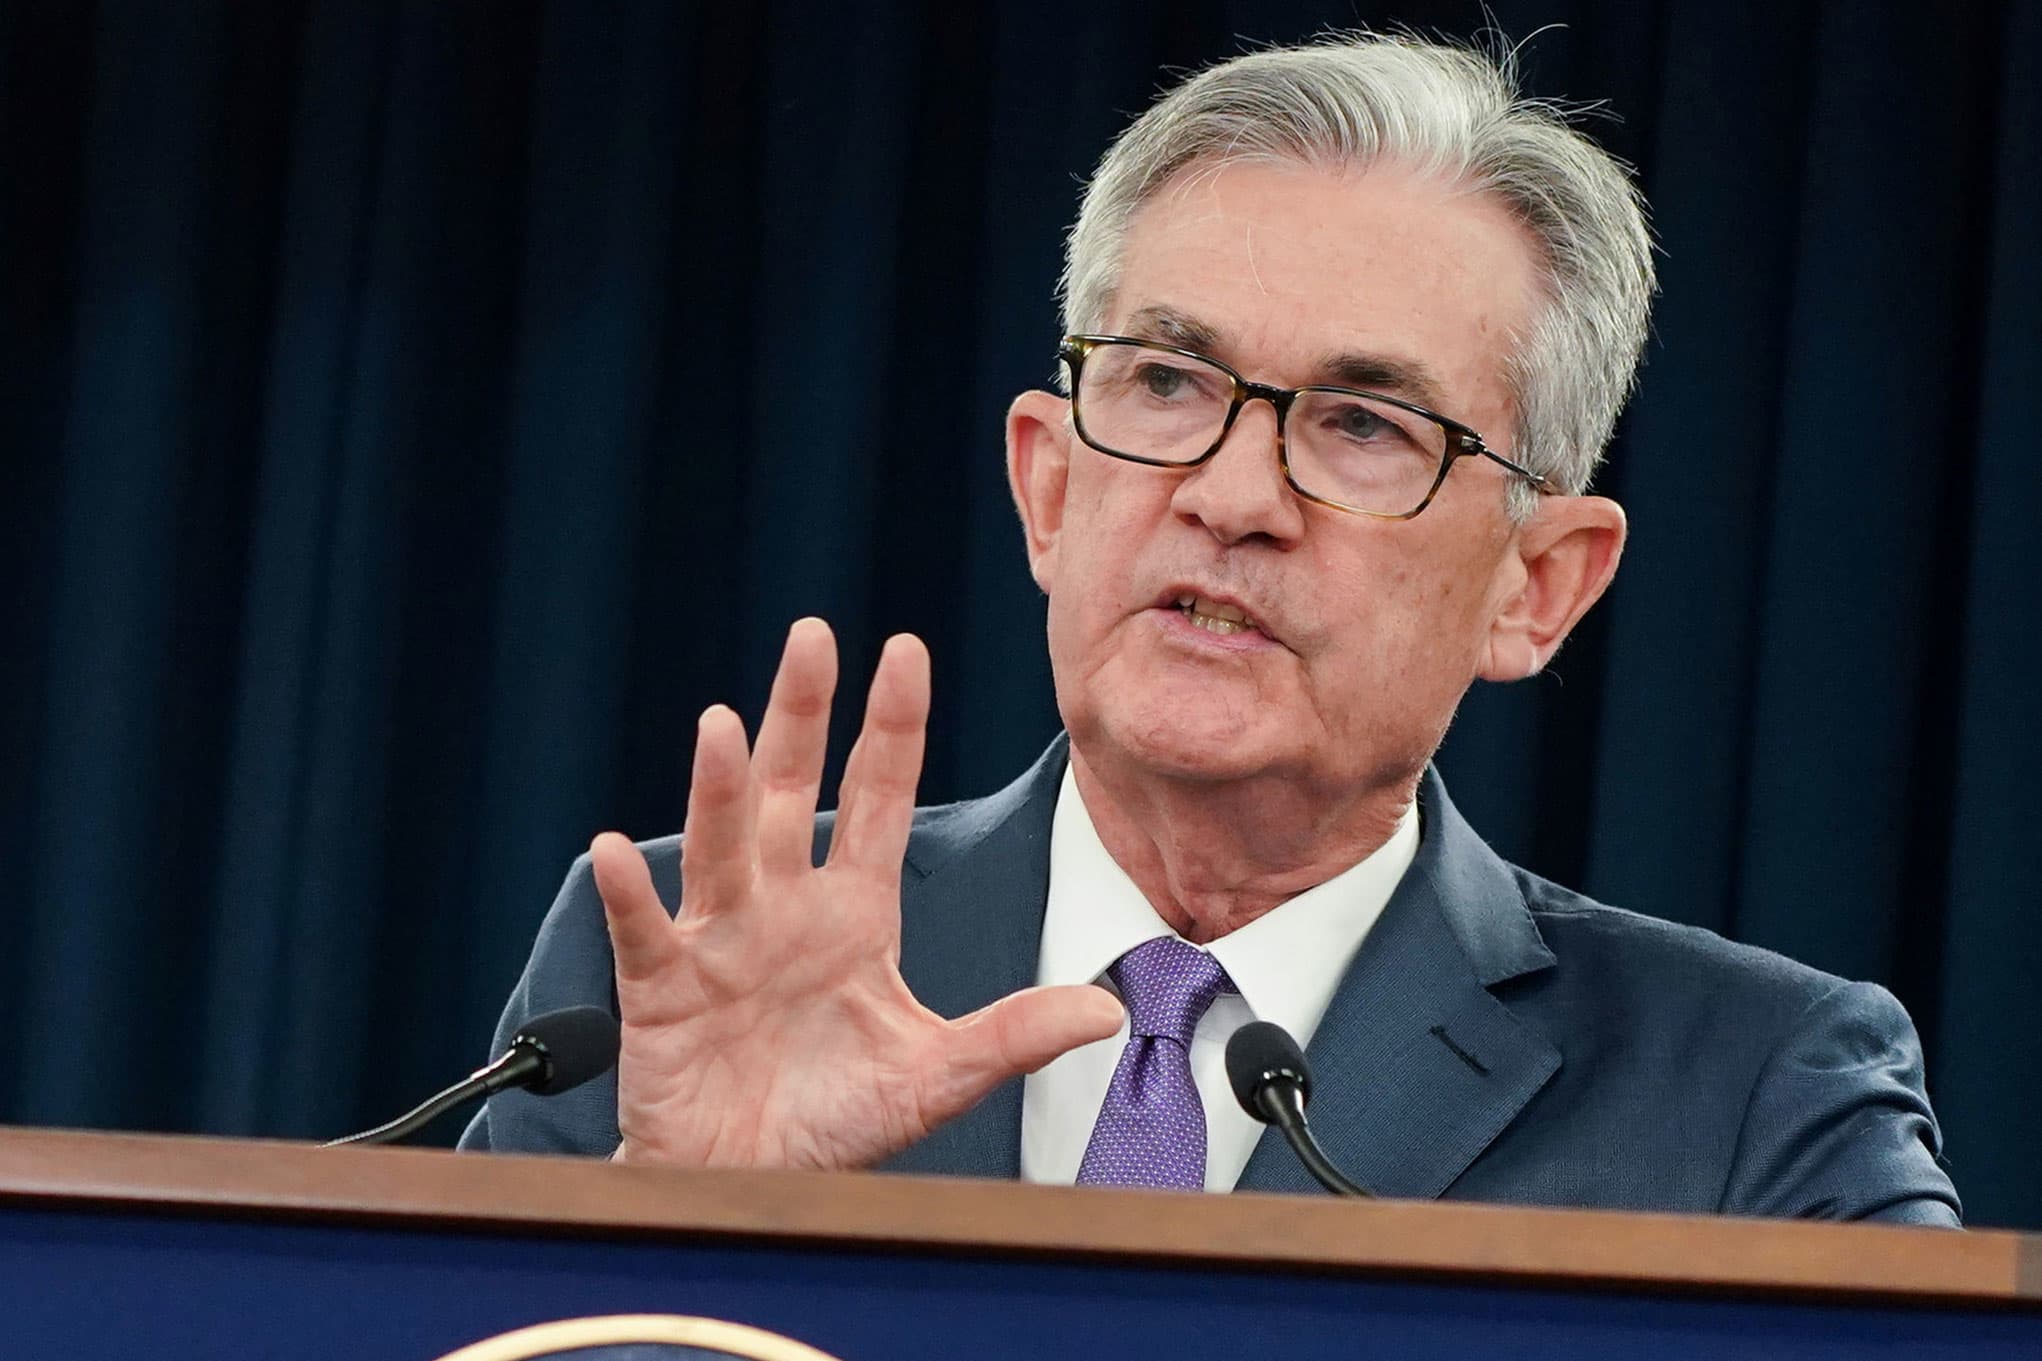 Powell llama a las criptomonedas 'no son depósitos de valor realmente útiles' y dice que la Fed se moverá lentamente